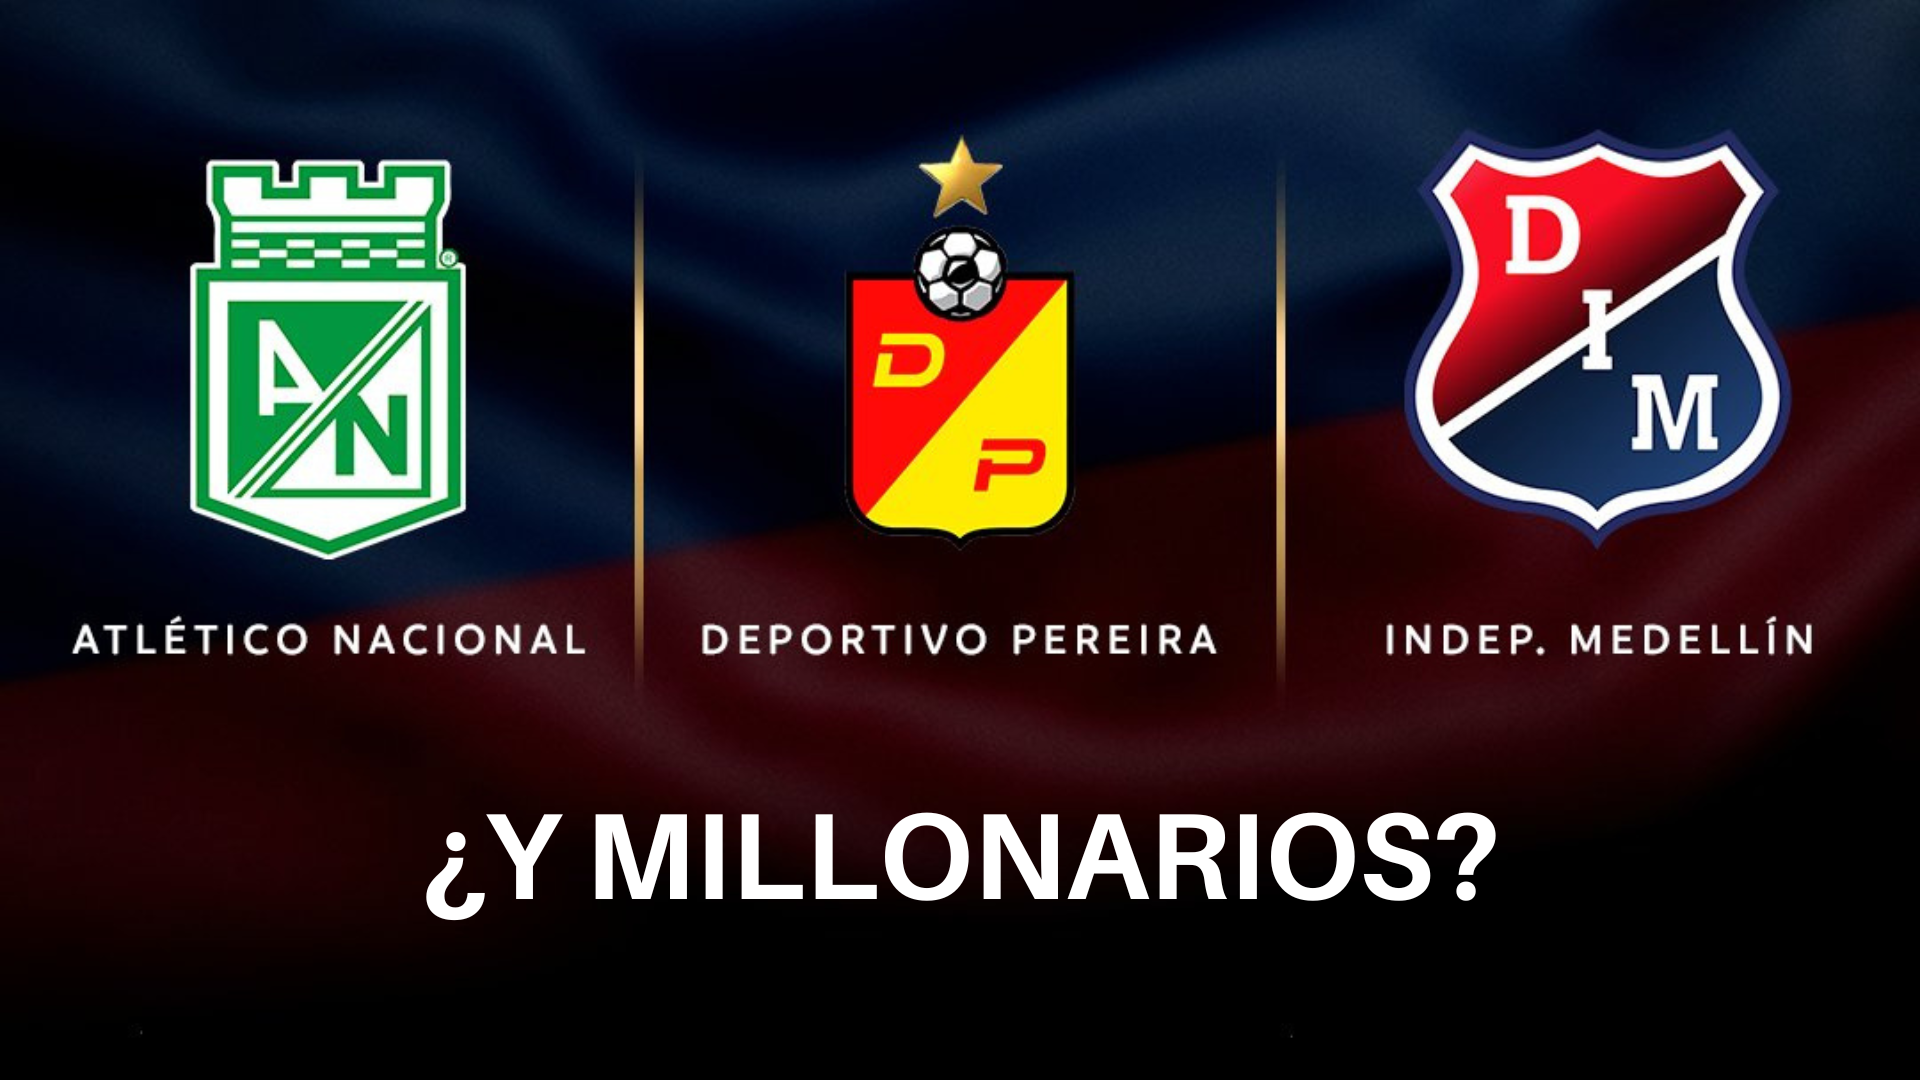 Según encuesta de CONMEBOL sobre los equipos colombianos en la Libertadores: Nacional es favorito y Millonarios la burla